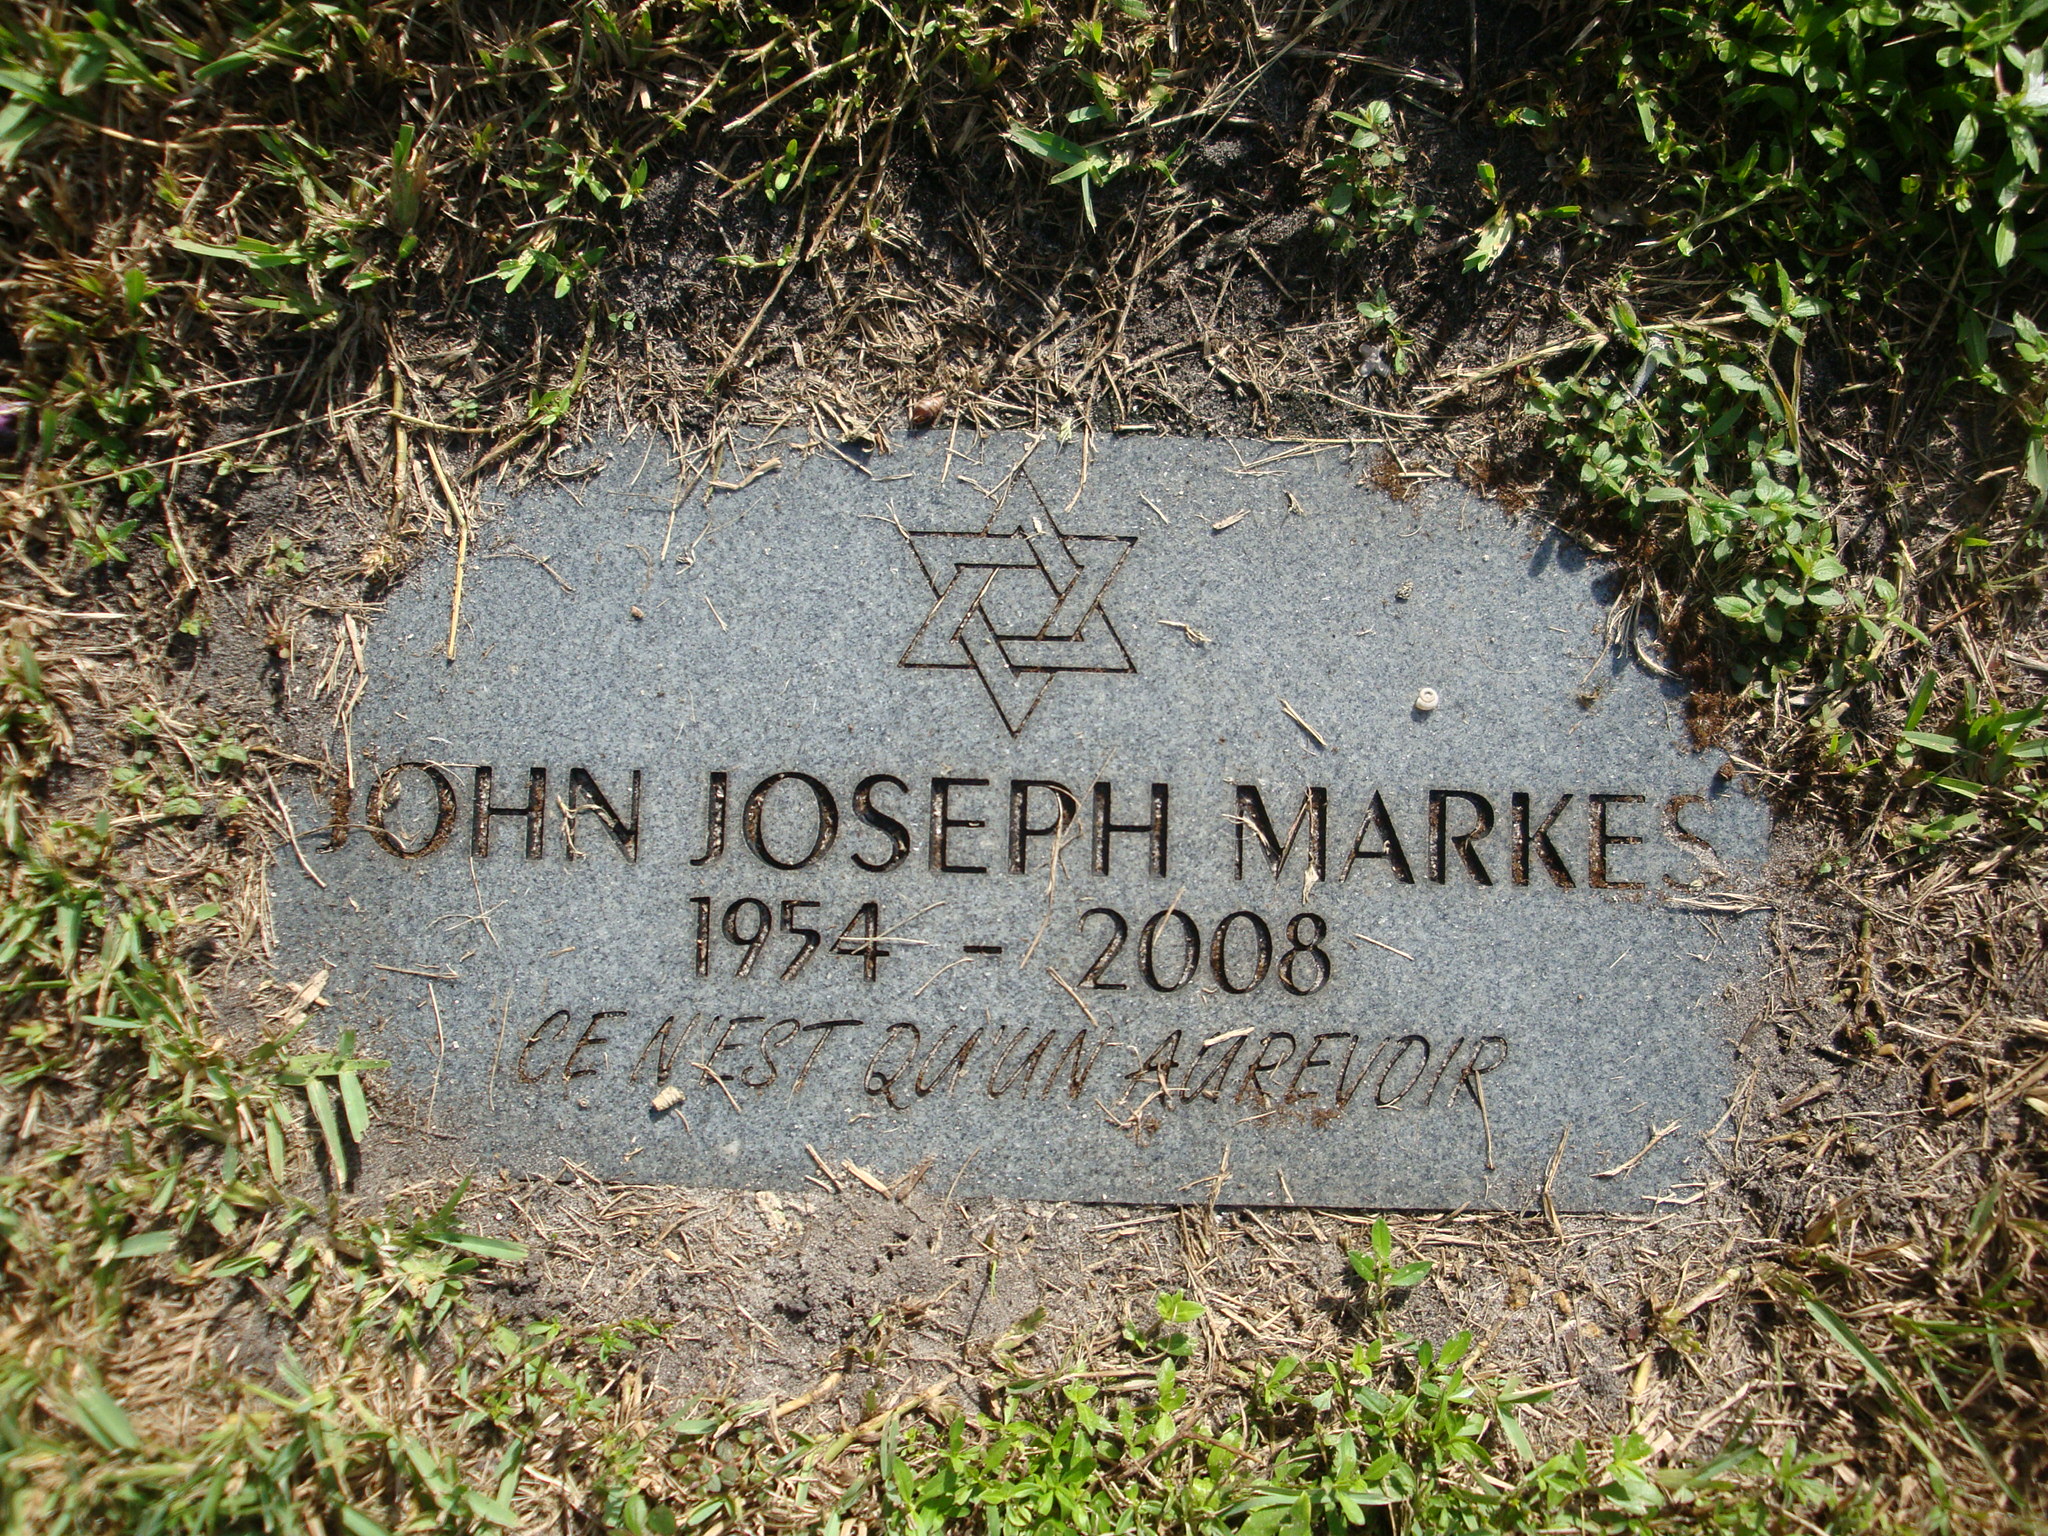 John Joseph Markes